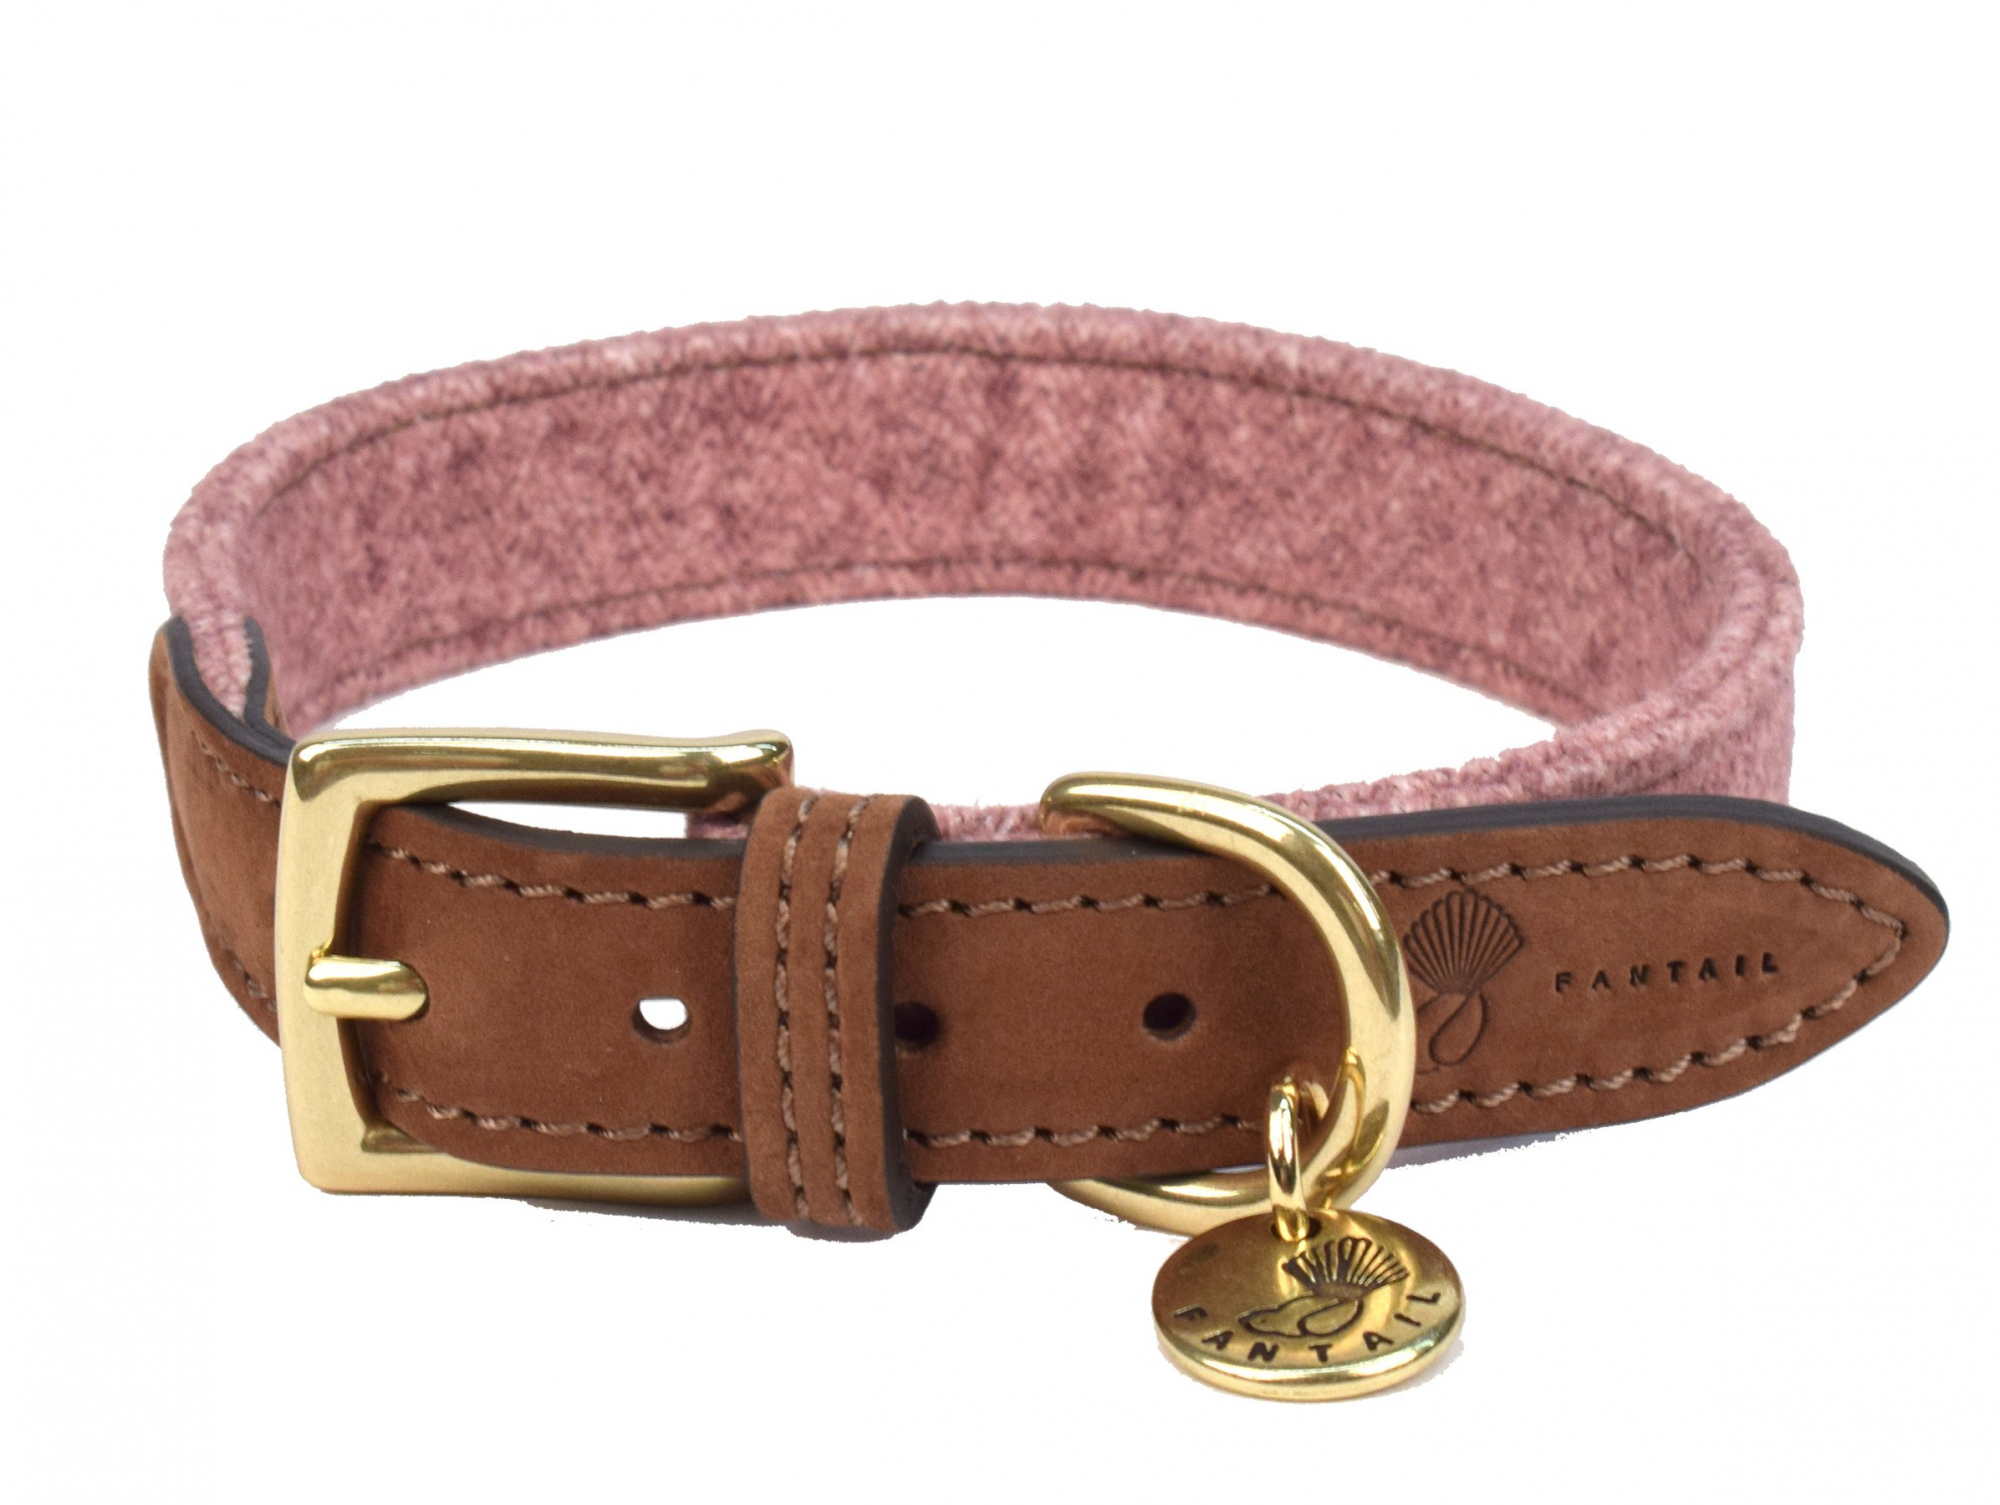 Collar Fantail de cuero y tela rosa para perro